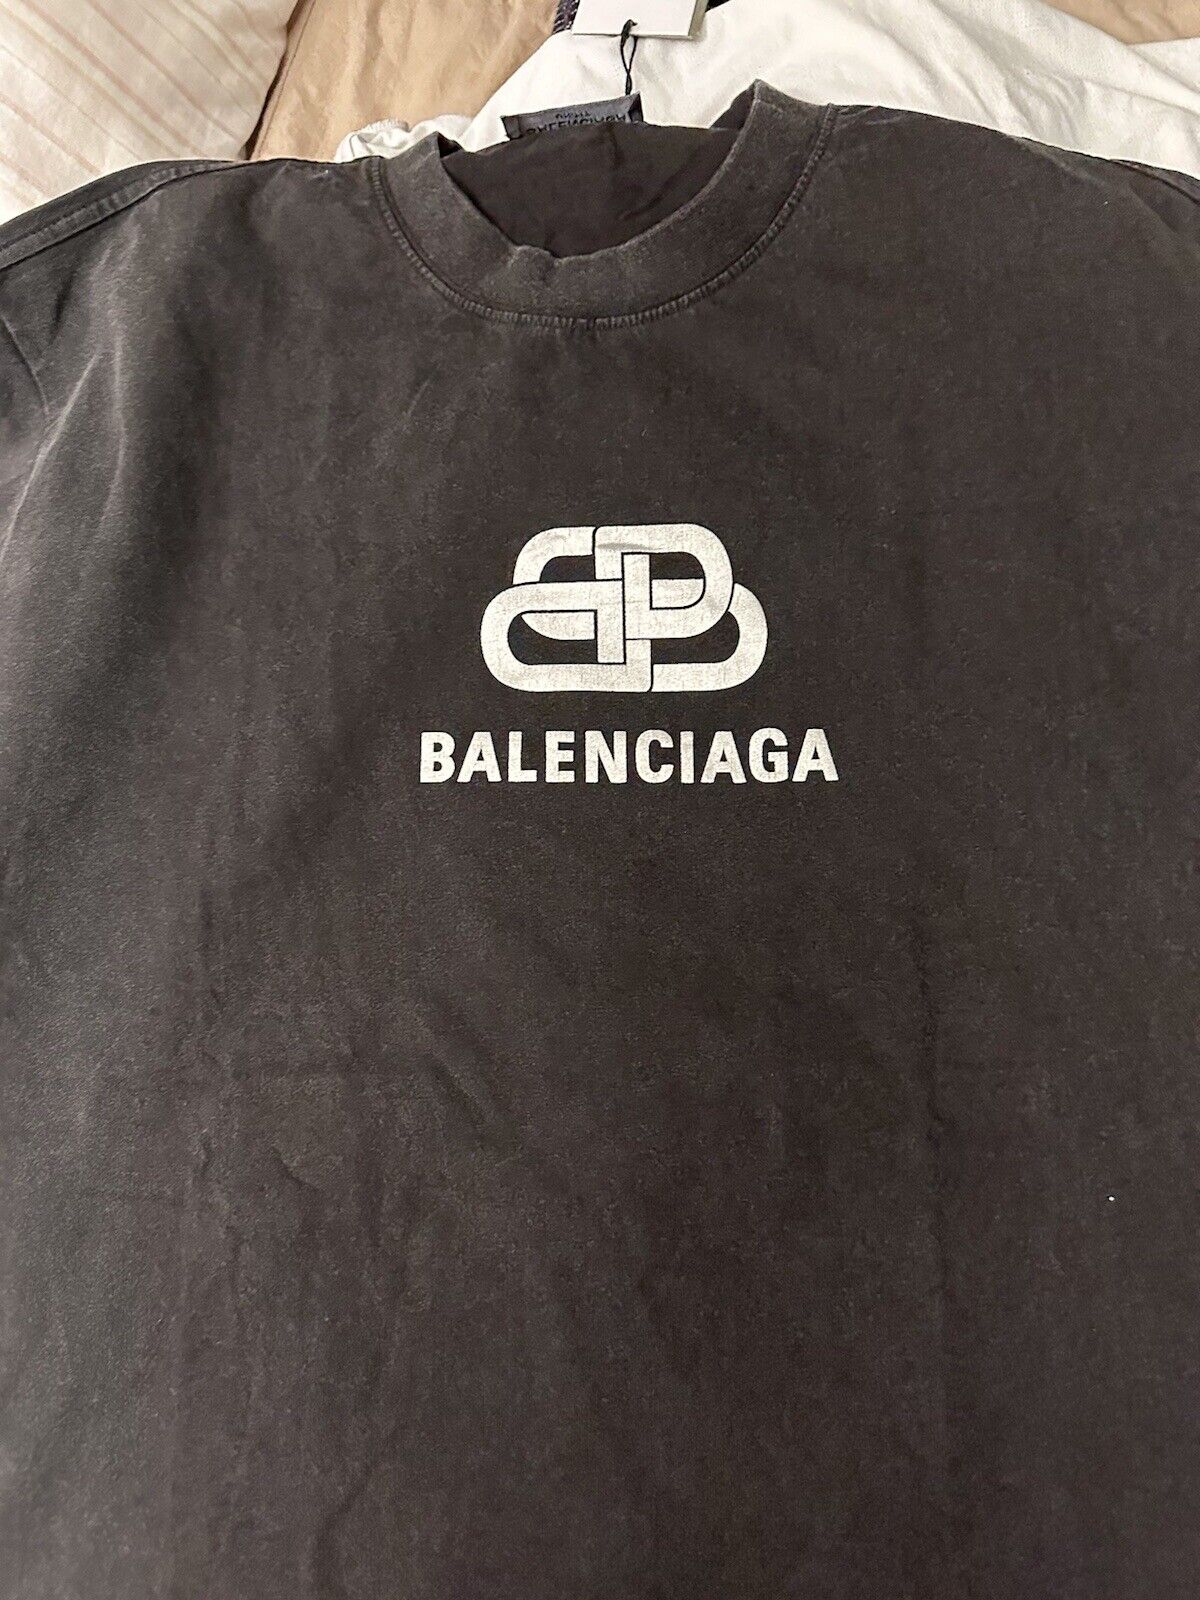 Balenciaga T Shirt Men